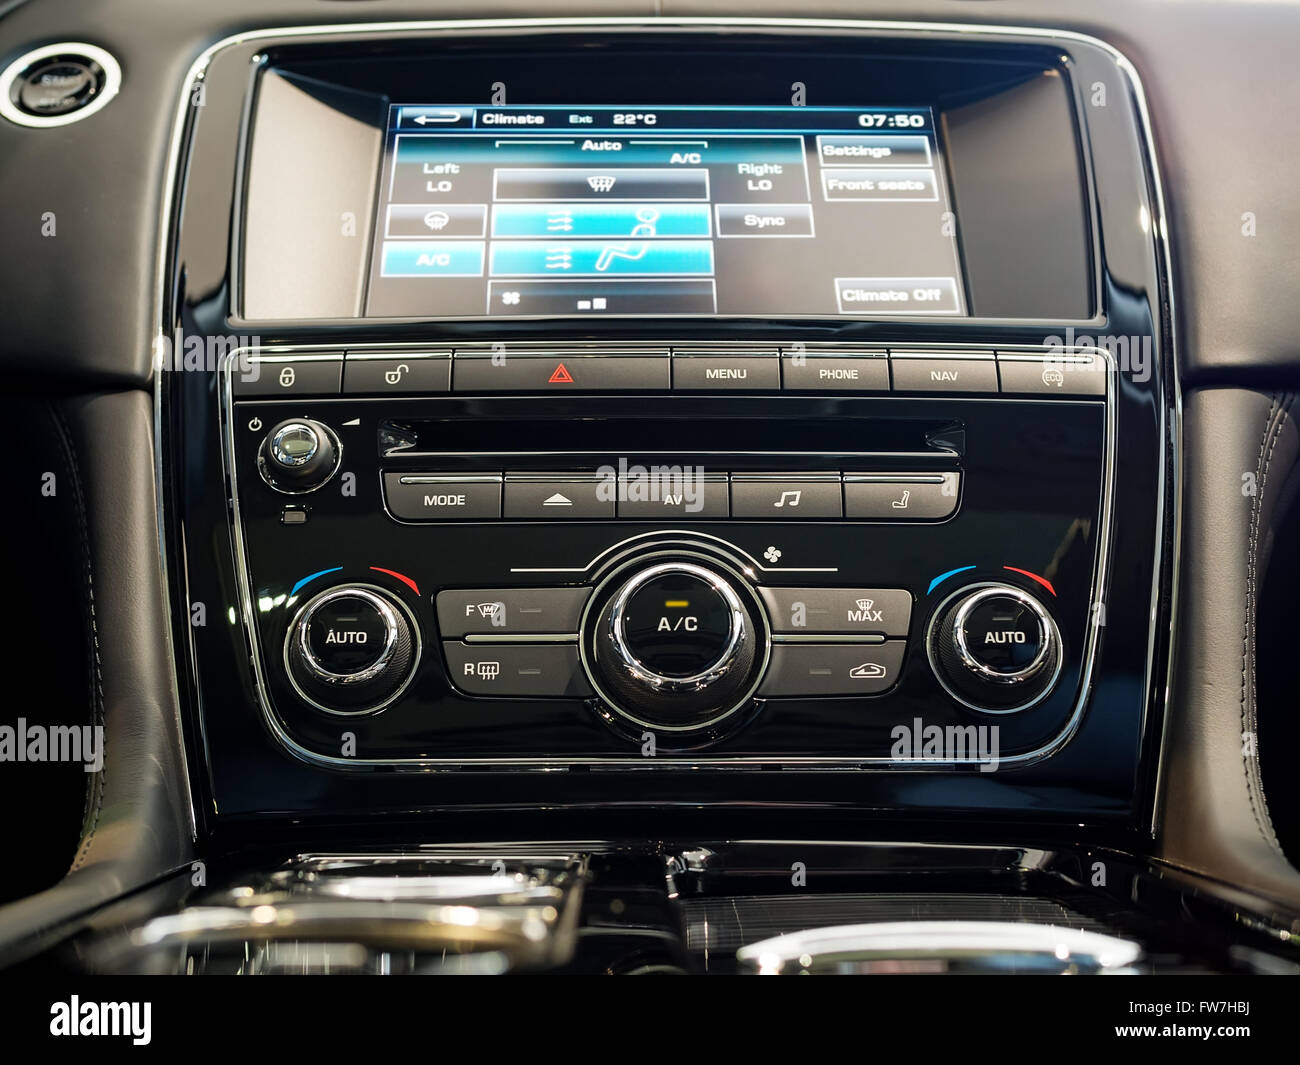 Mittelkonsole und ein Luxus-Auto-Bildschirm Stockfotografie - Alamy